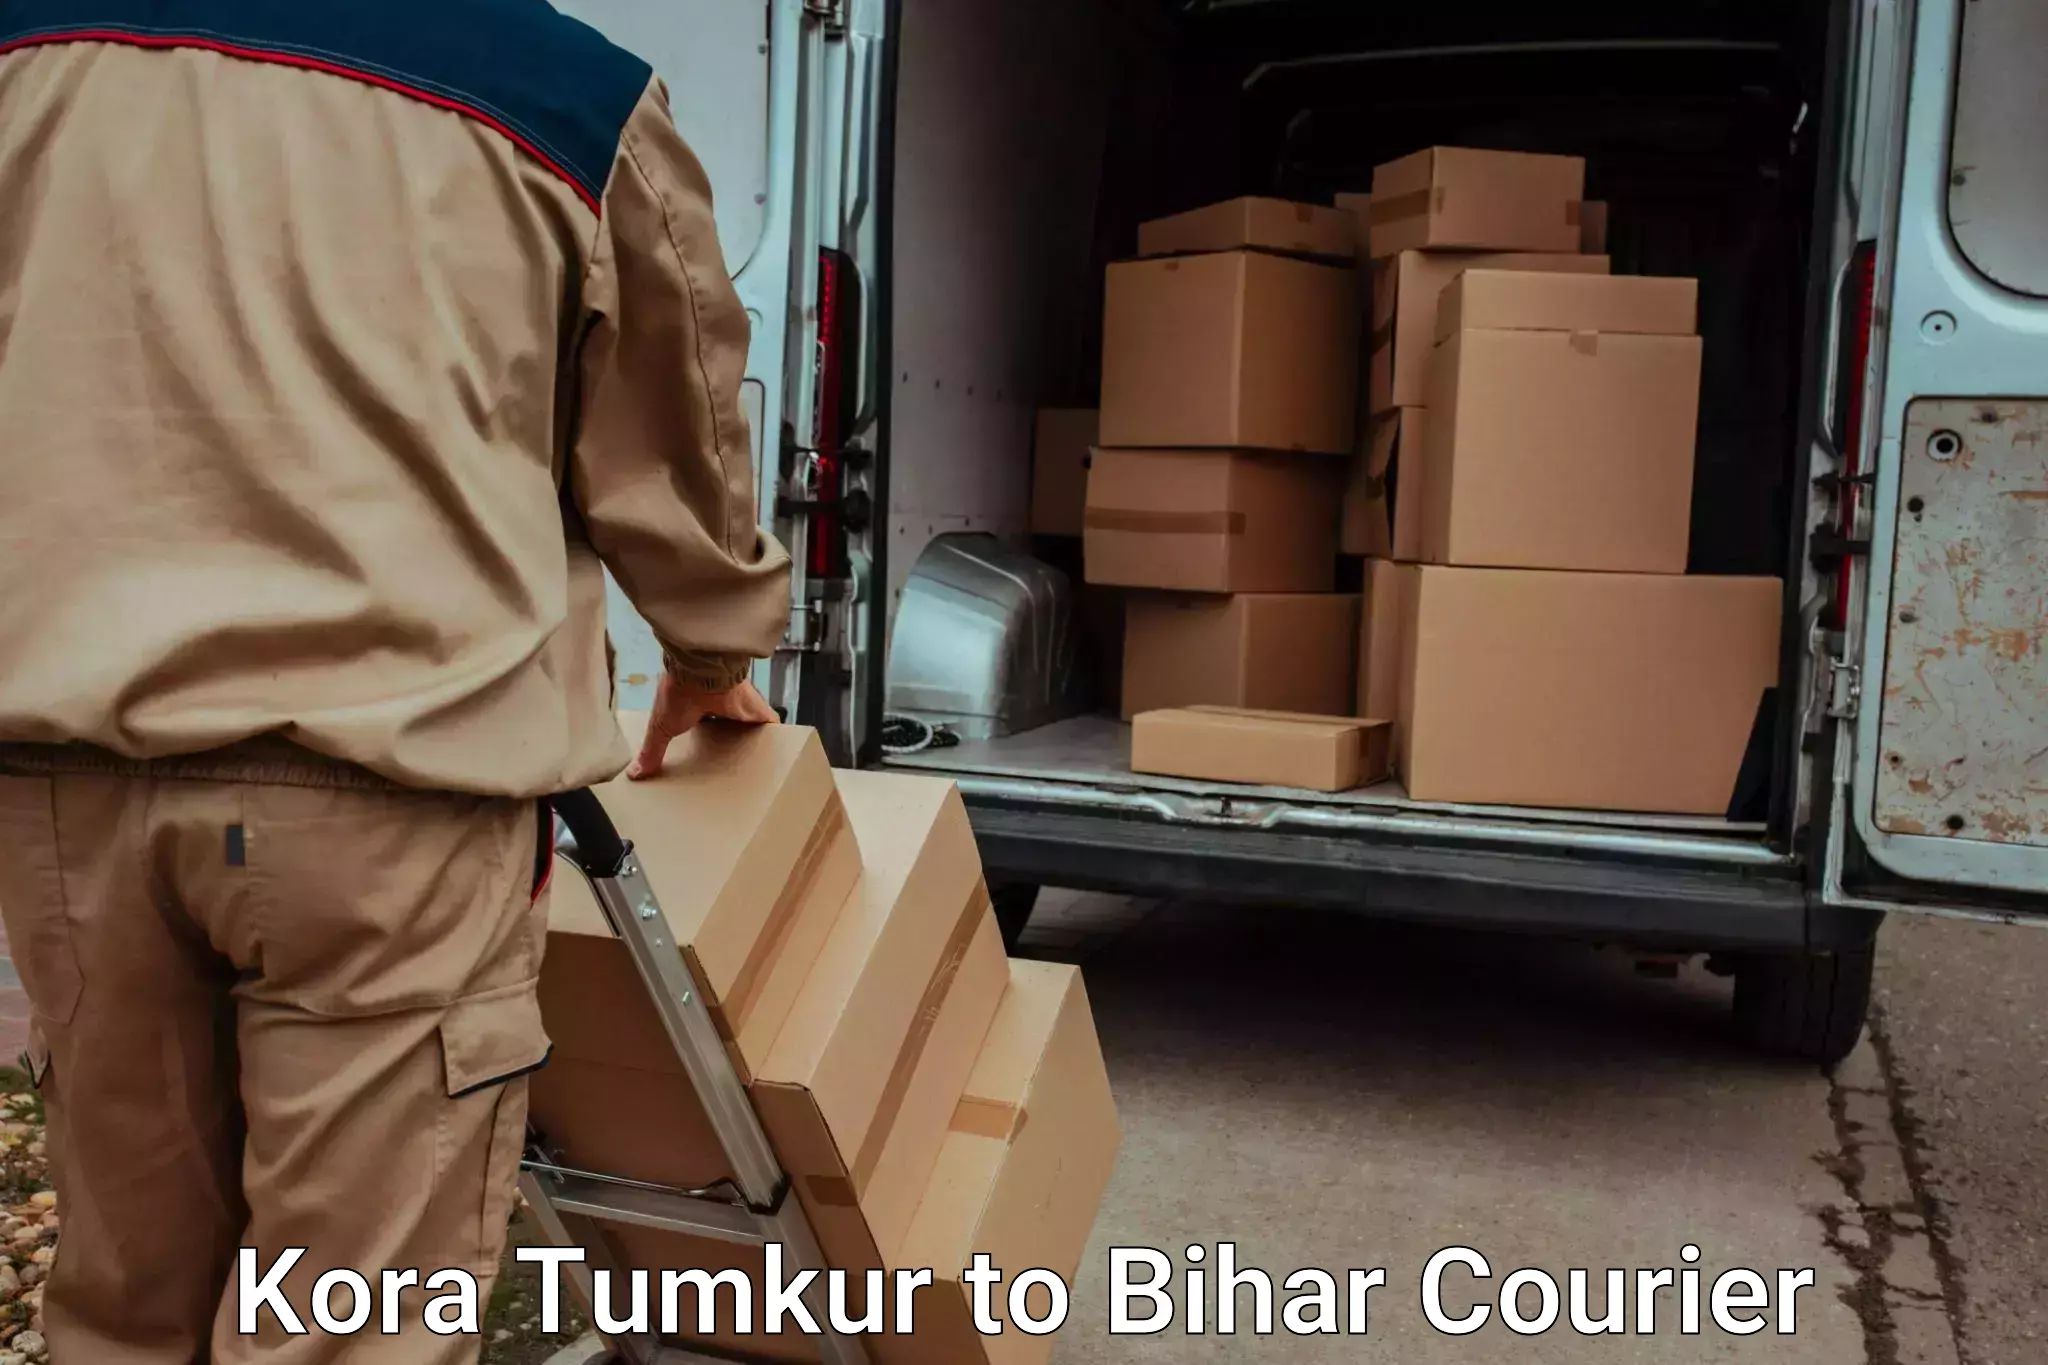 Baggage delivery technology Kora Tumkur to Jaynagar